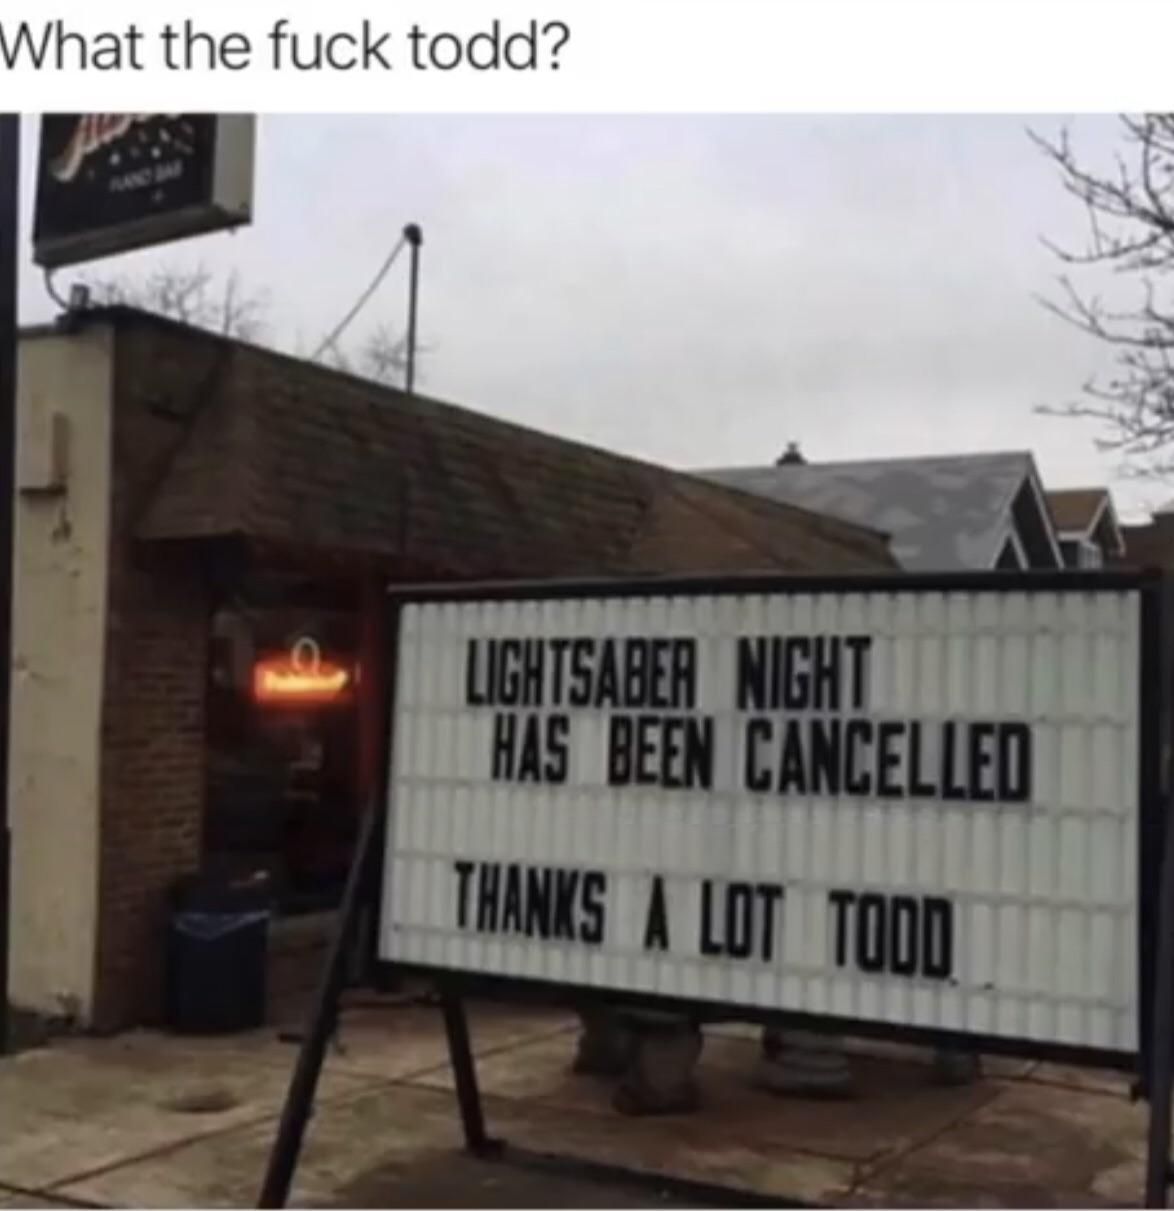 ***ing Todd